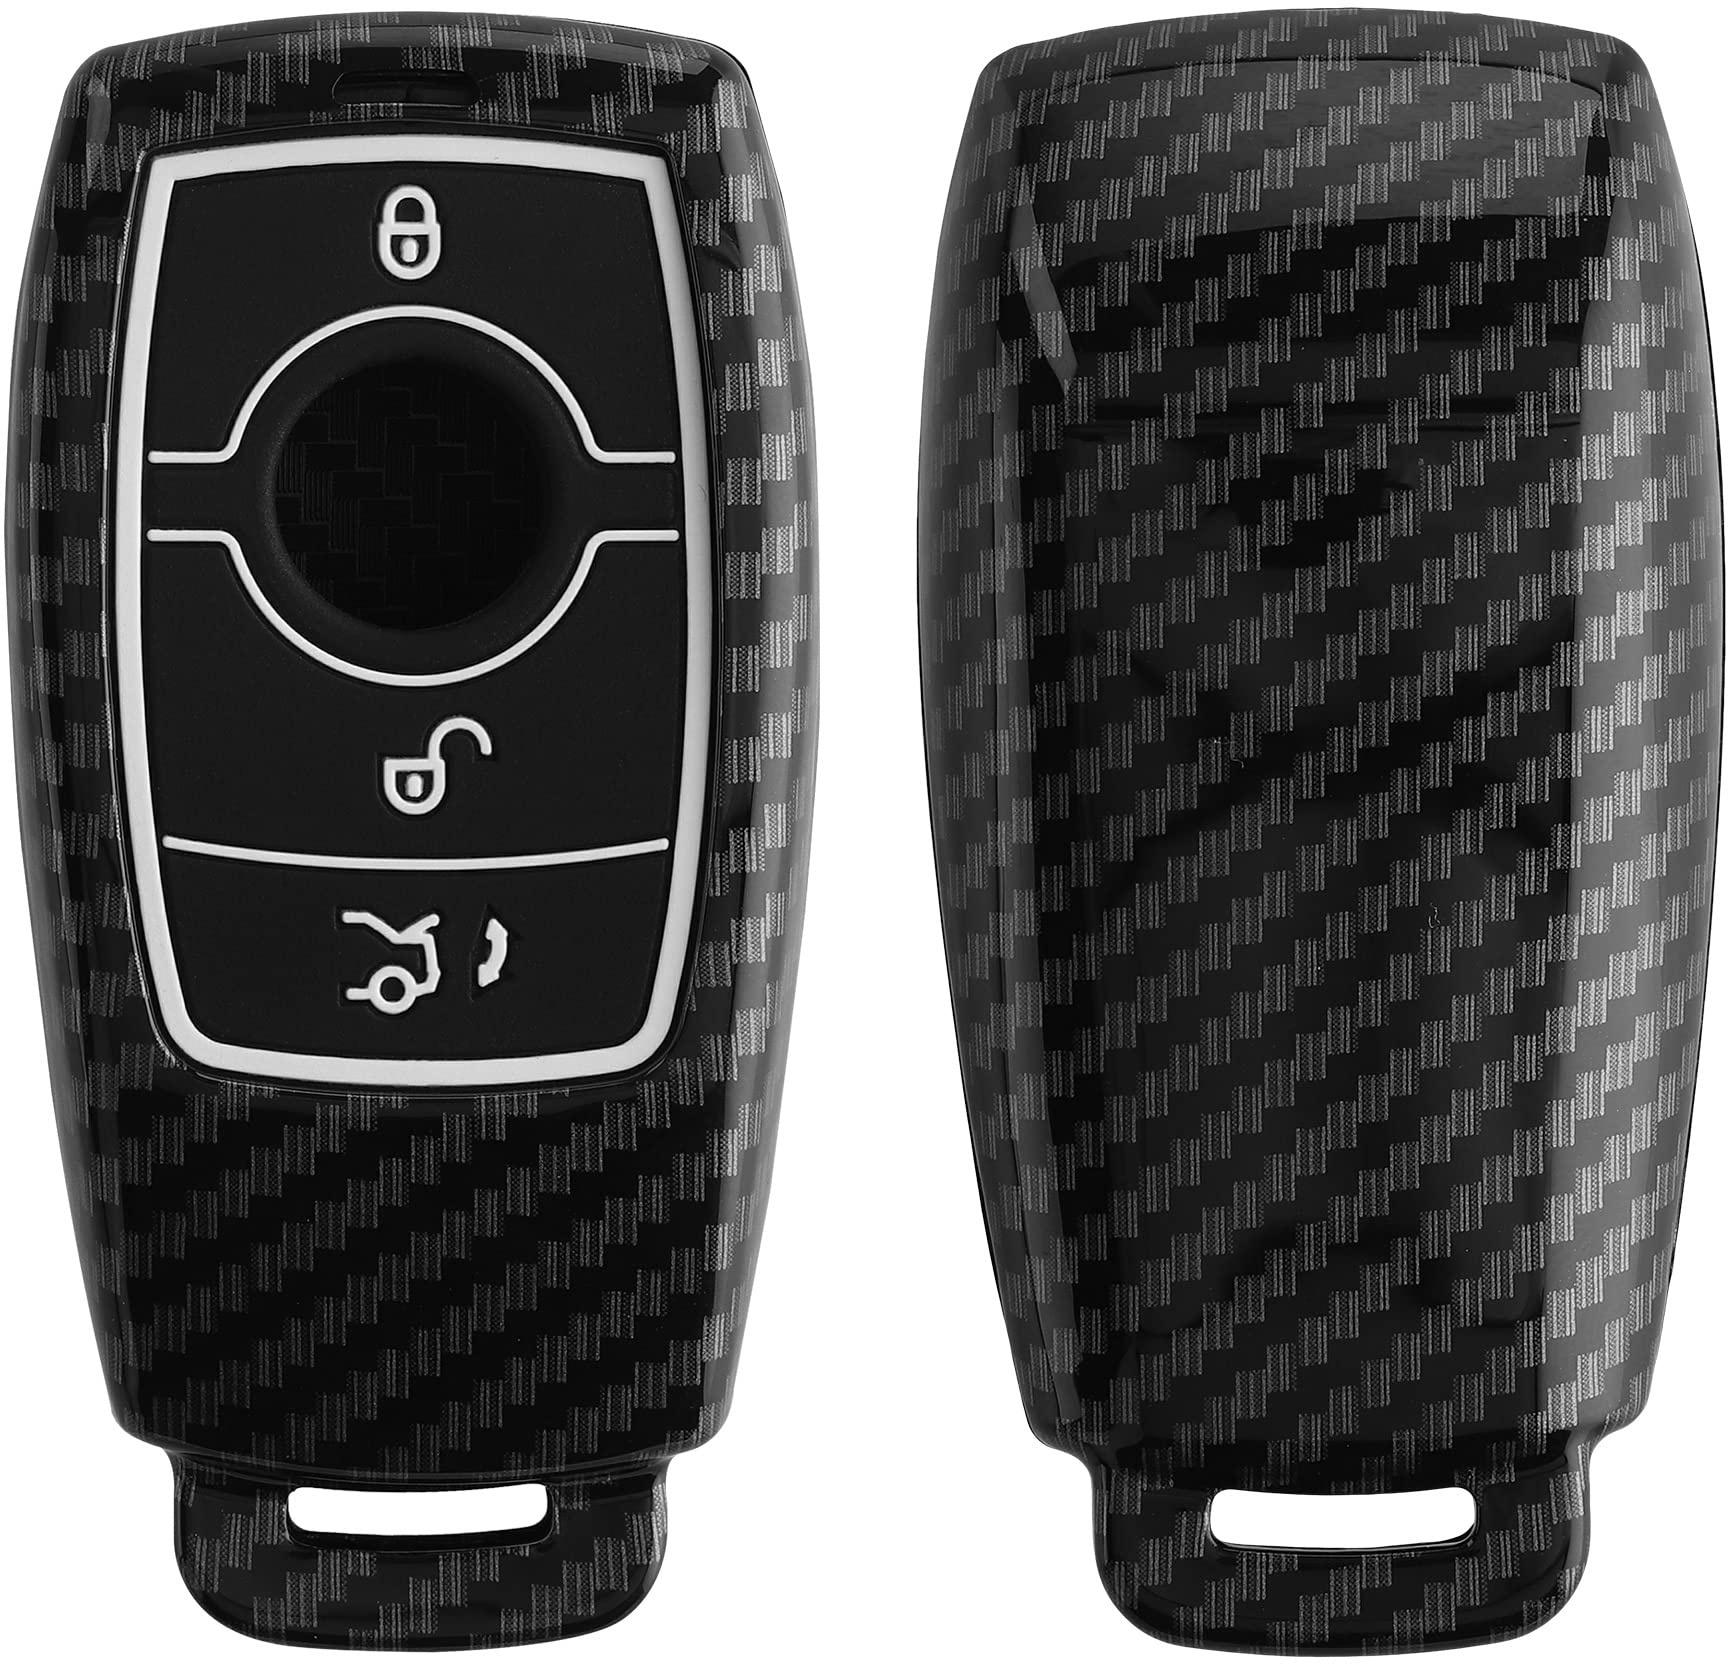 kwmobile Autoschlüssel Hülle kompatibel mit Mercedes Benz Smart Key Autoschlüssel (nur Keyless) - Hardcover Schutzhülle Schlüsselhülle Cover in Schwarz